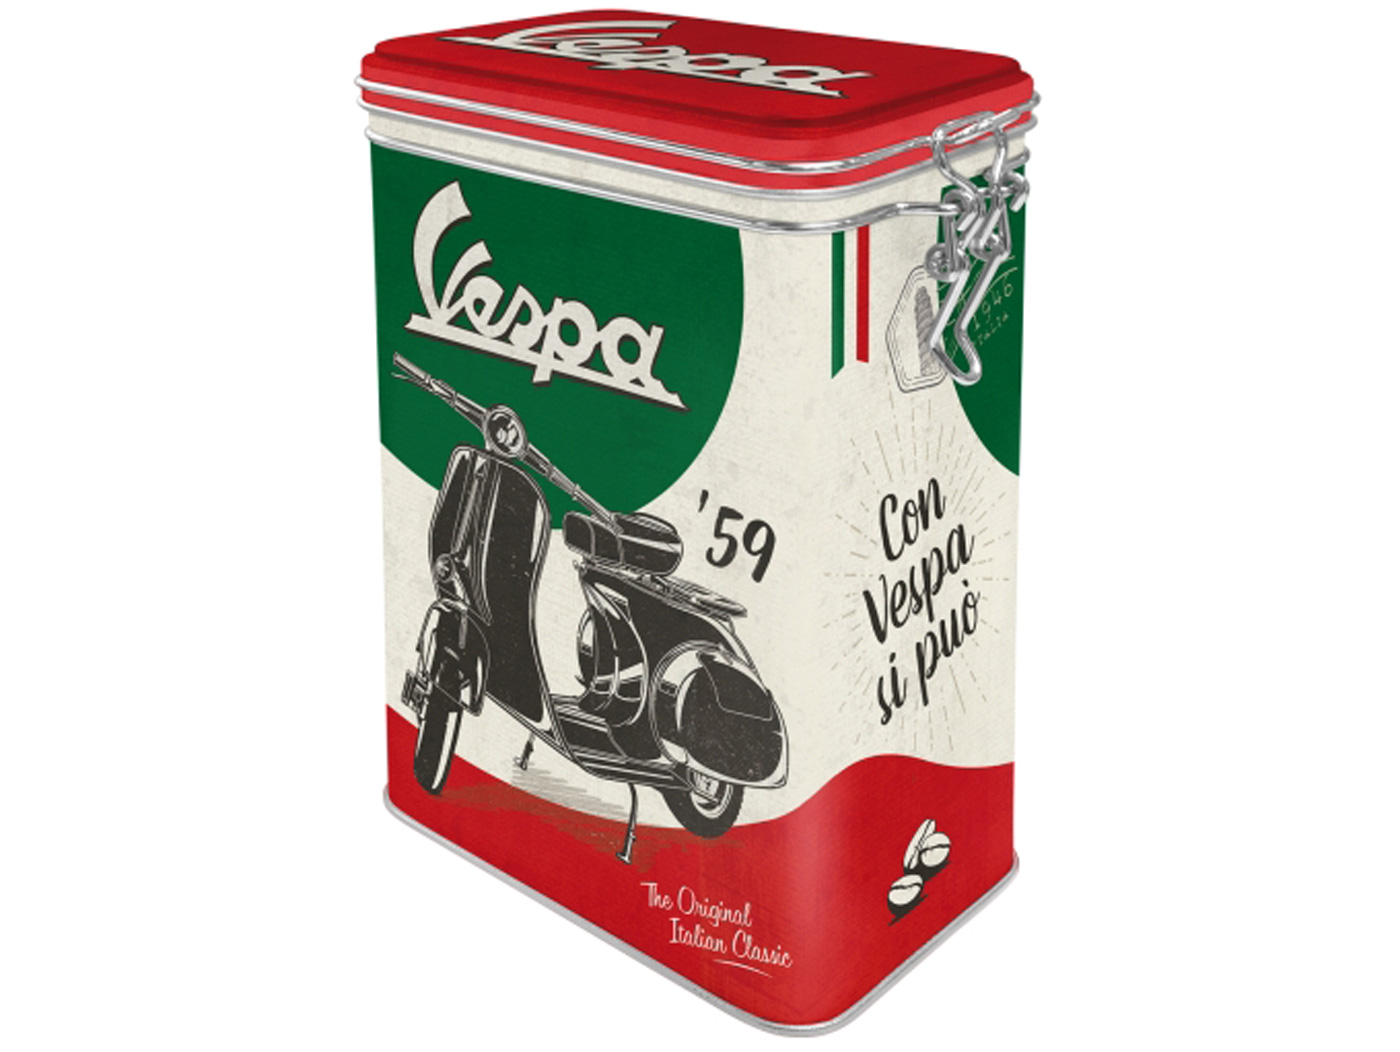 Μεταλλικό κουτί Vespa "The Italian Classic" Ιδανικό για δώρο